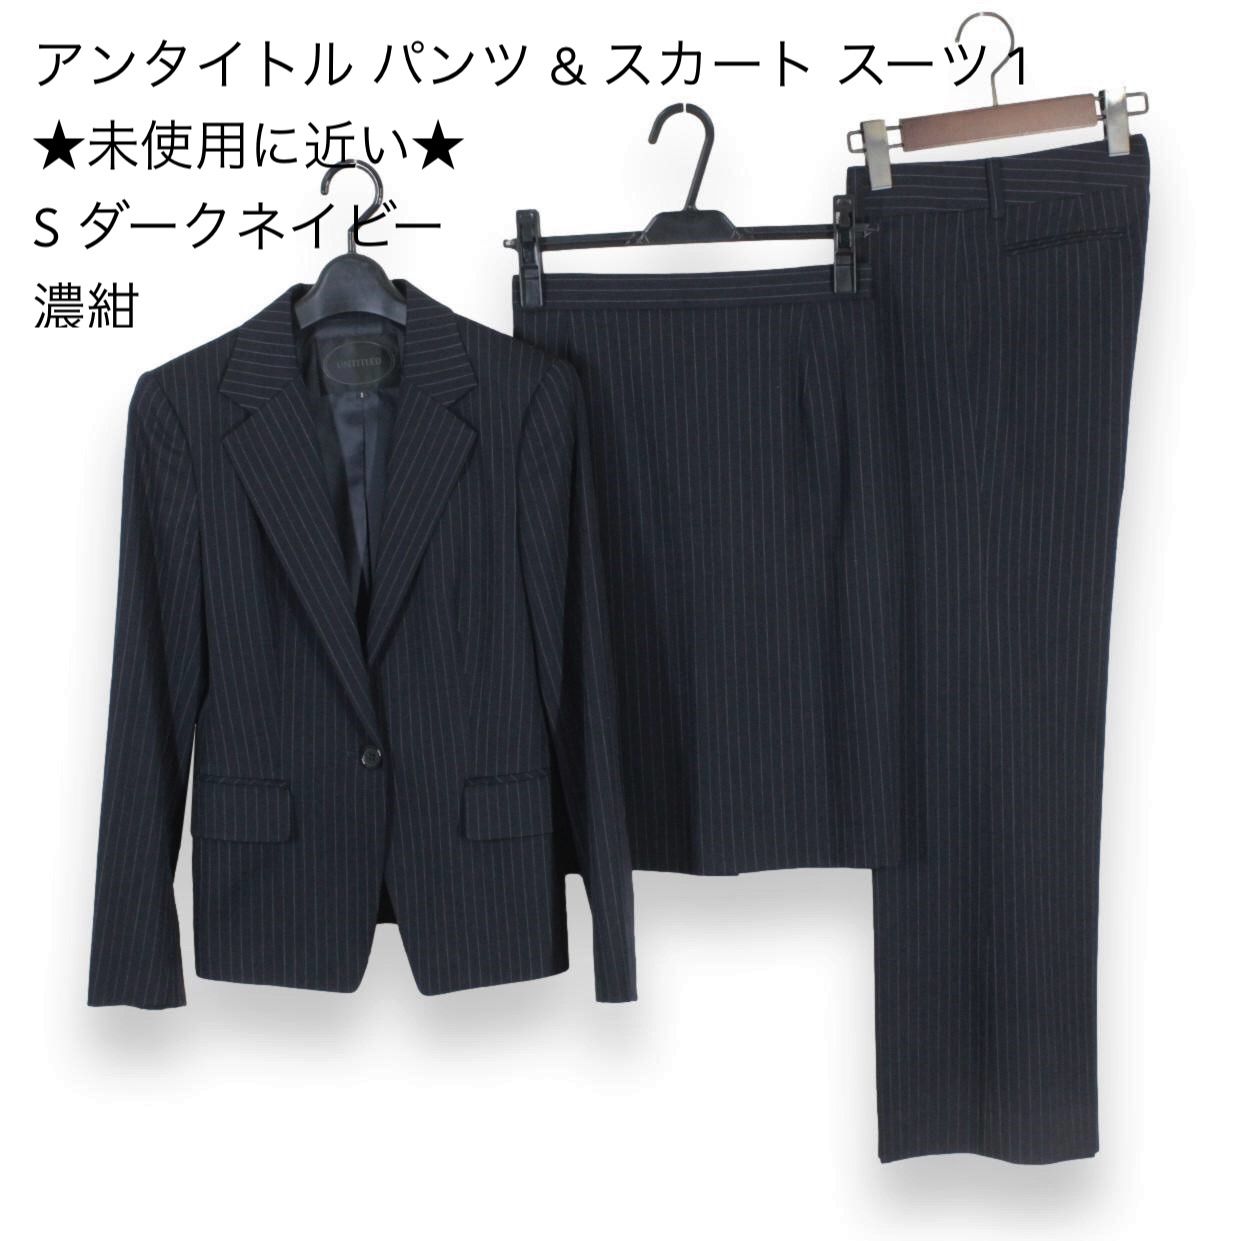 05【極美品】アンタイトル パンツ & スカート スーツ 1 ☆未使用に近い